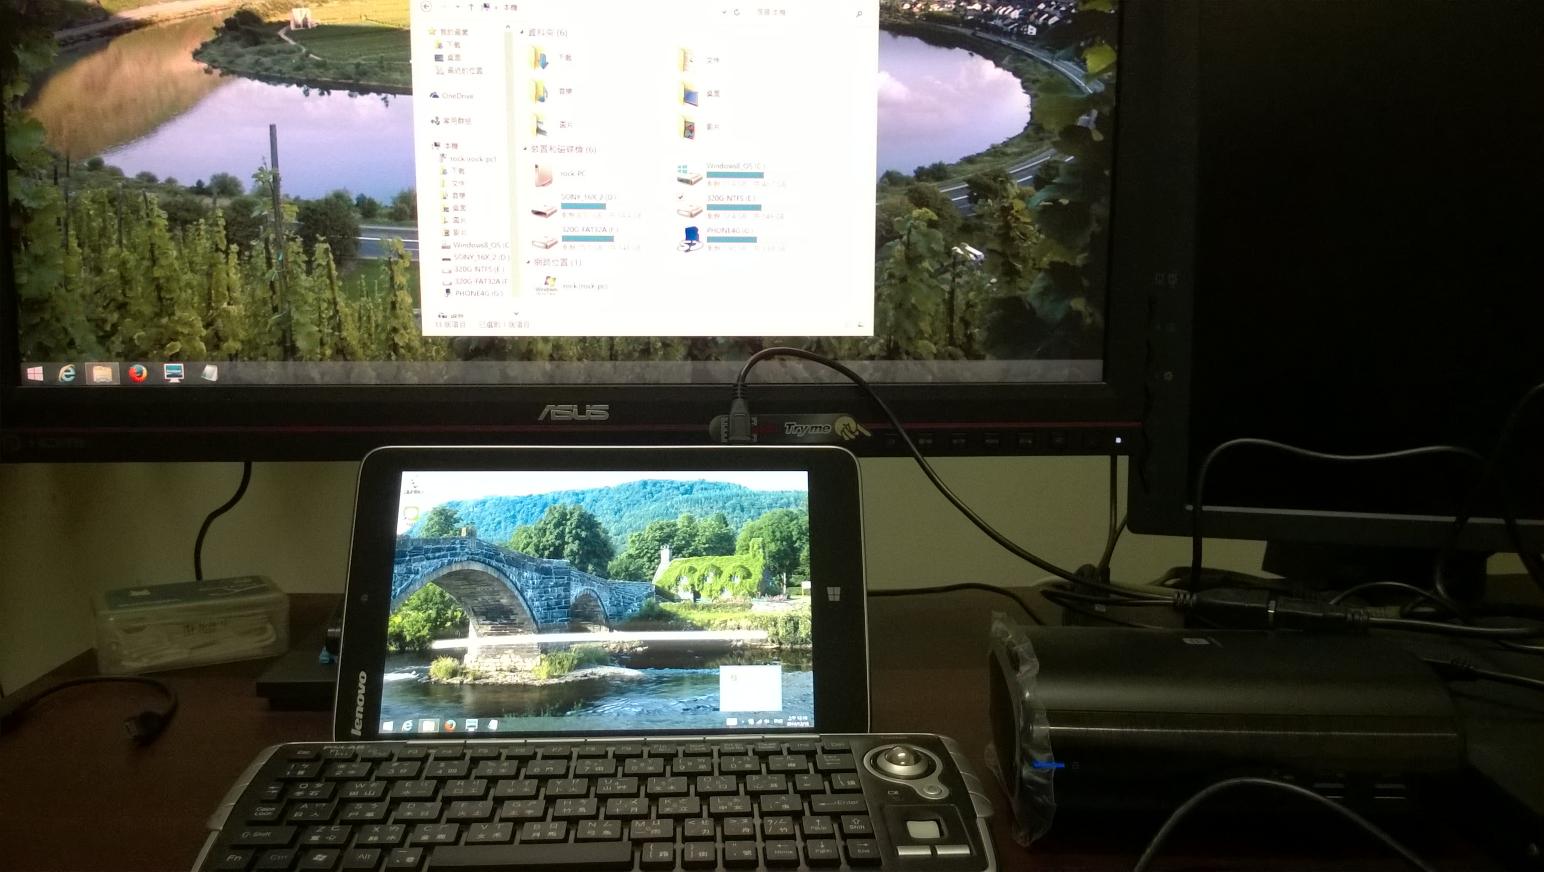 平板連接 USB 擴充基座並外接電腦螢幕